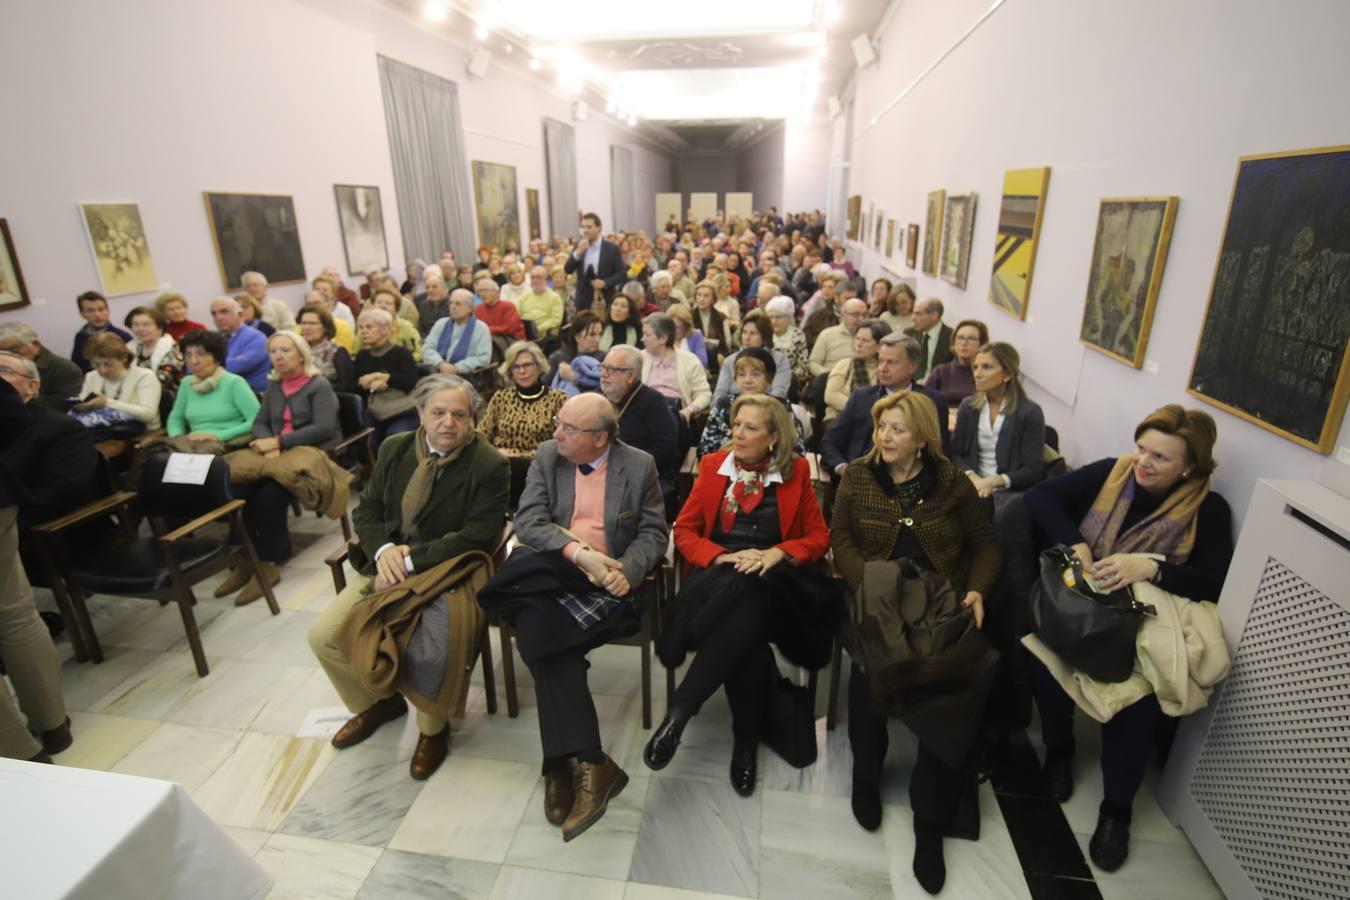 La conferencia de Rodríguez Neila en el Foro «El templo de Córdoba», en imágenes